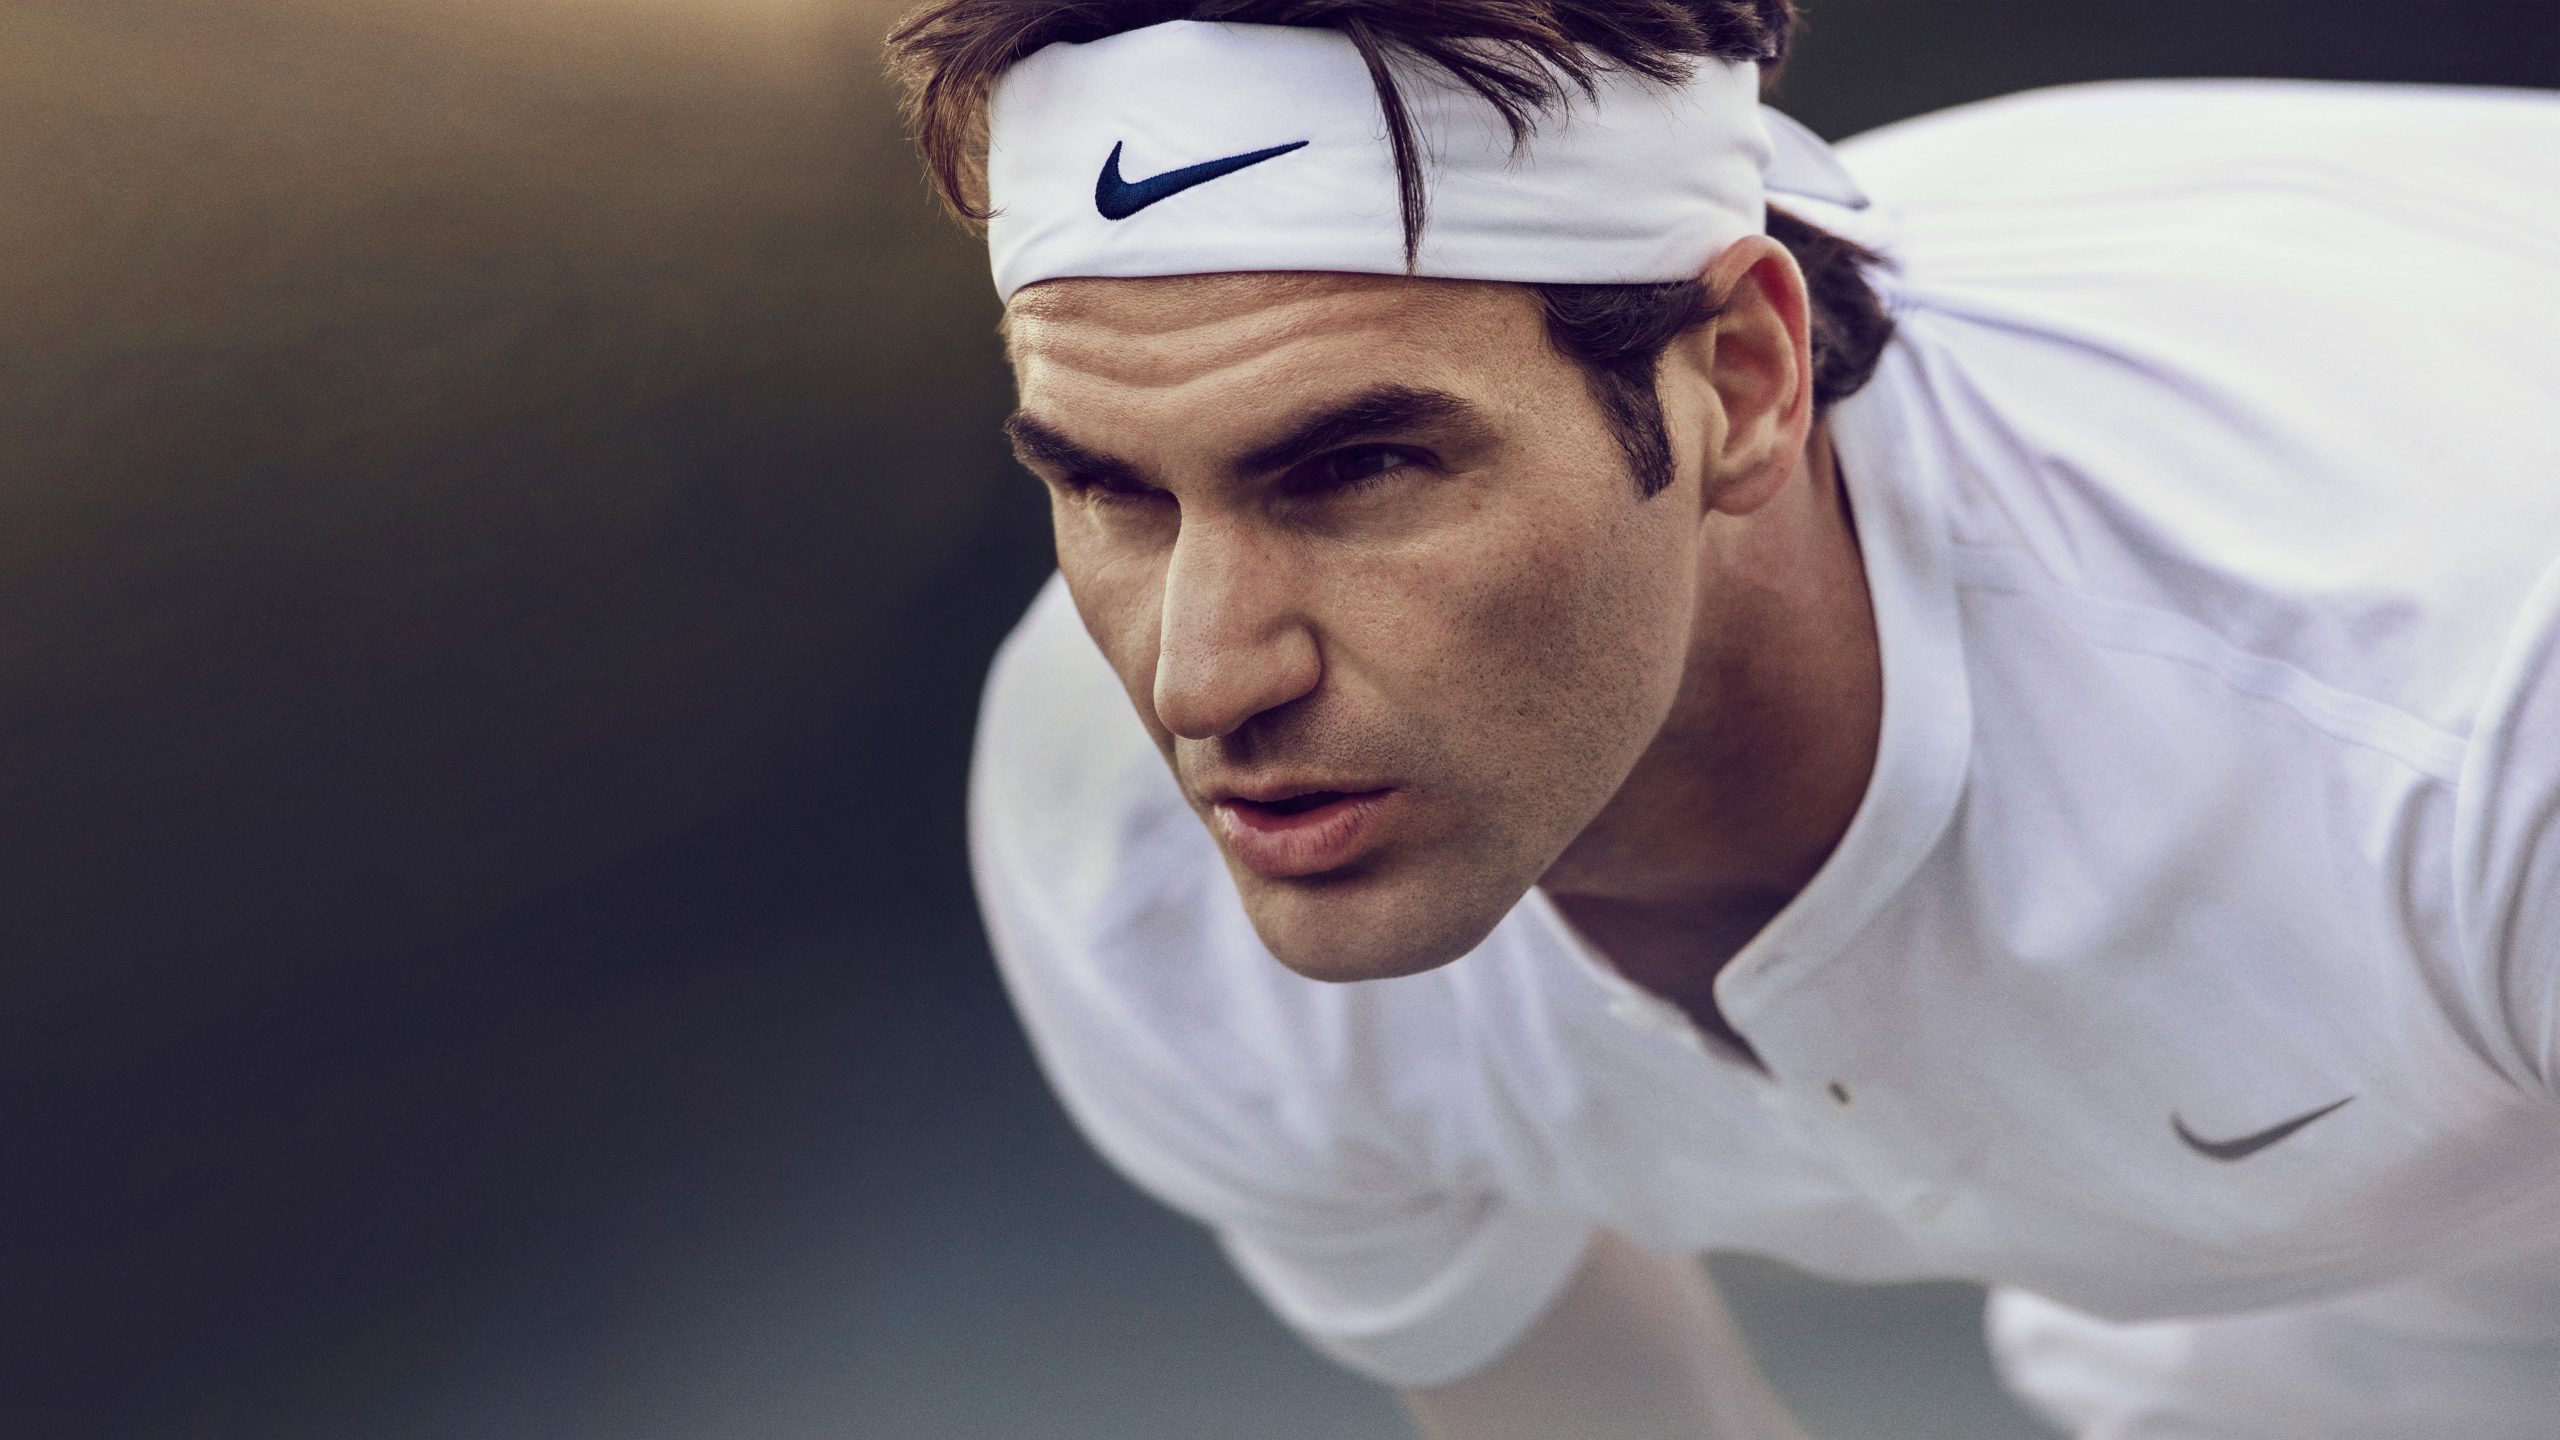 Wallpaper 4k, Roger Federer, Tennis, Wimbledon, Champion